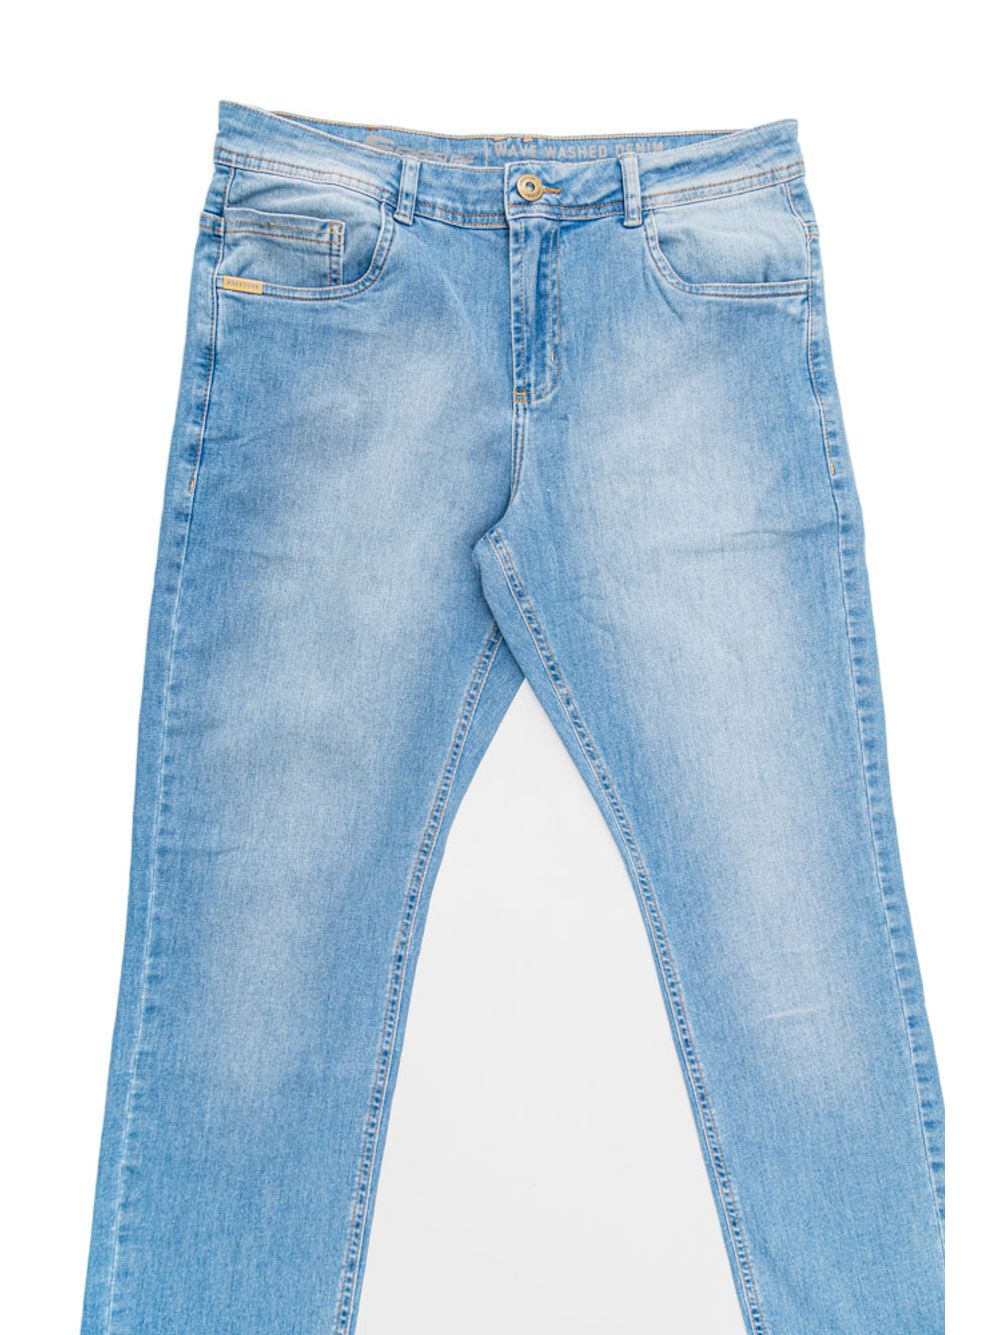 Calça jeans masculina: veja como usar essa peça versátil e atemporal –  Homem S/A